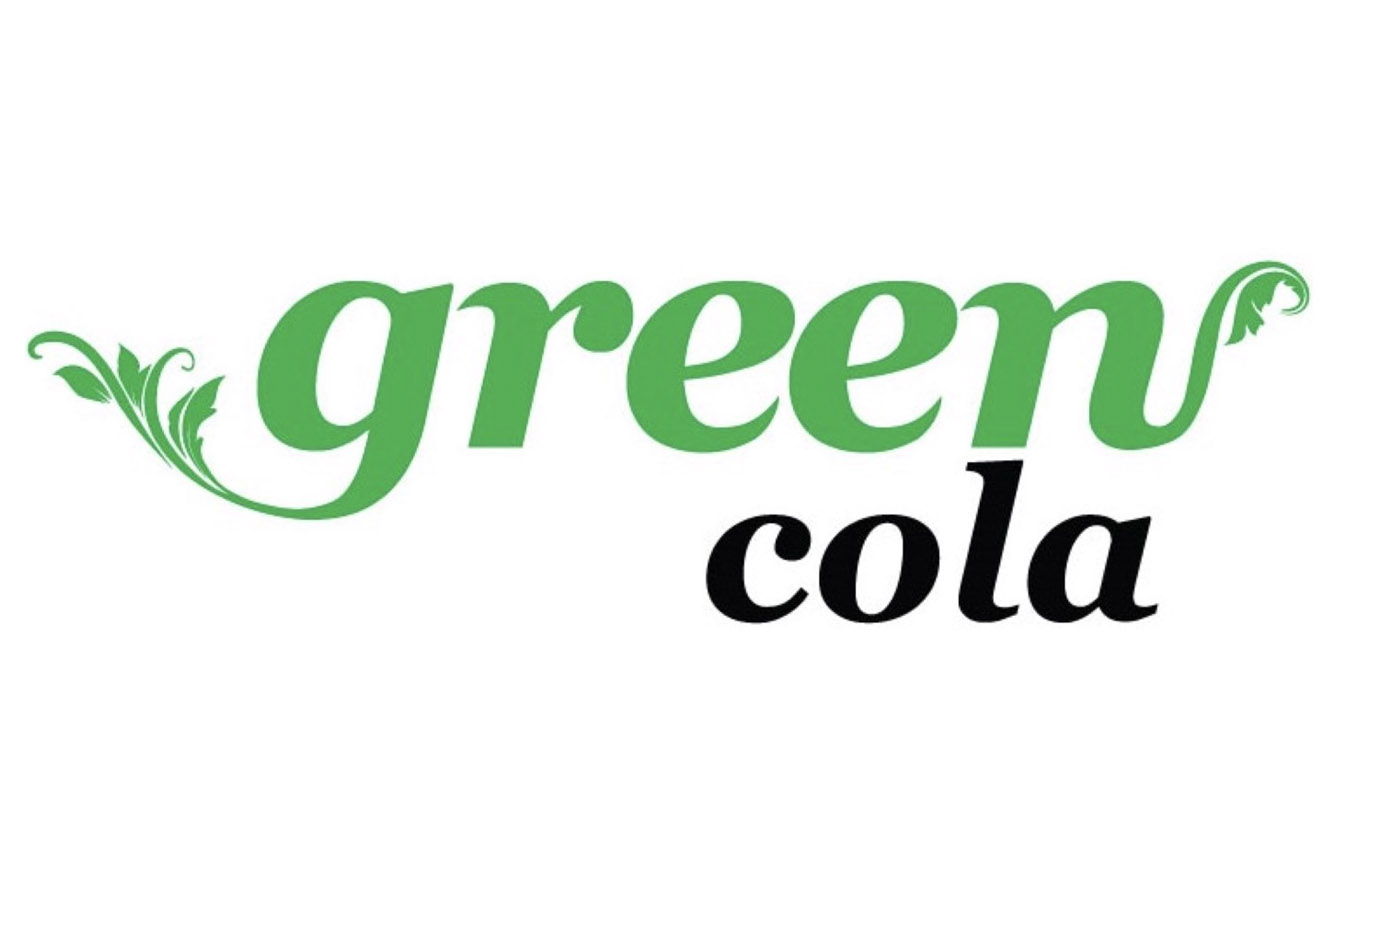 Deal στα τρόφιμα: Η Green Cola συγχωνεύθηκε με το Ζαγόρι – Τα νέα σχέδια των Χήτου και Βενιέρη